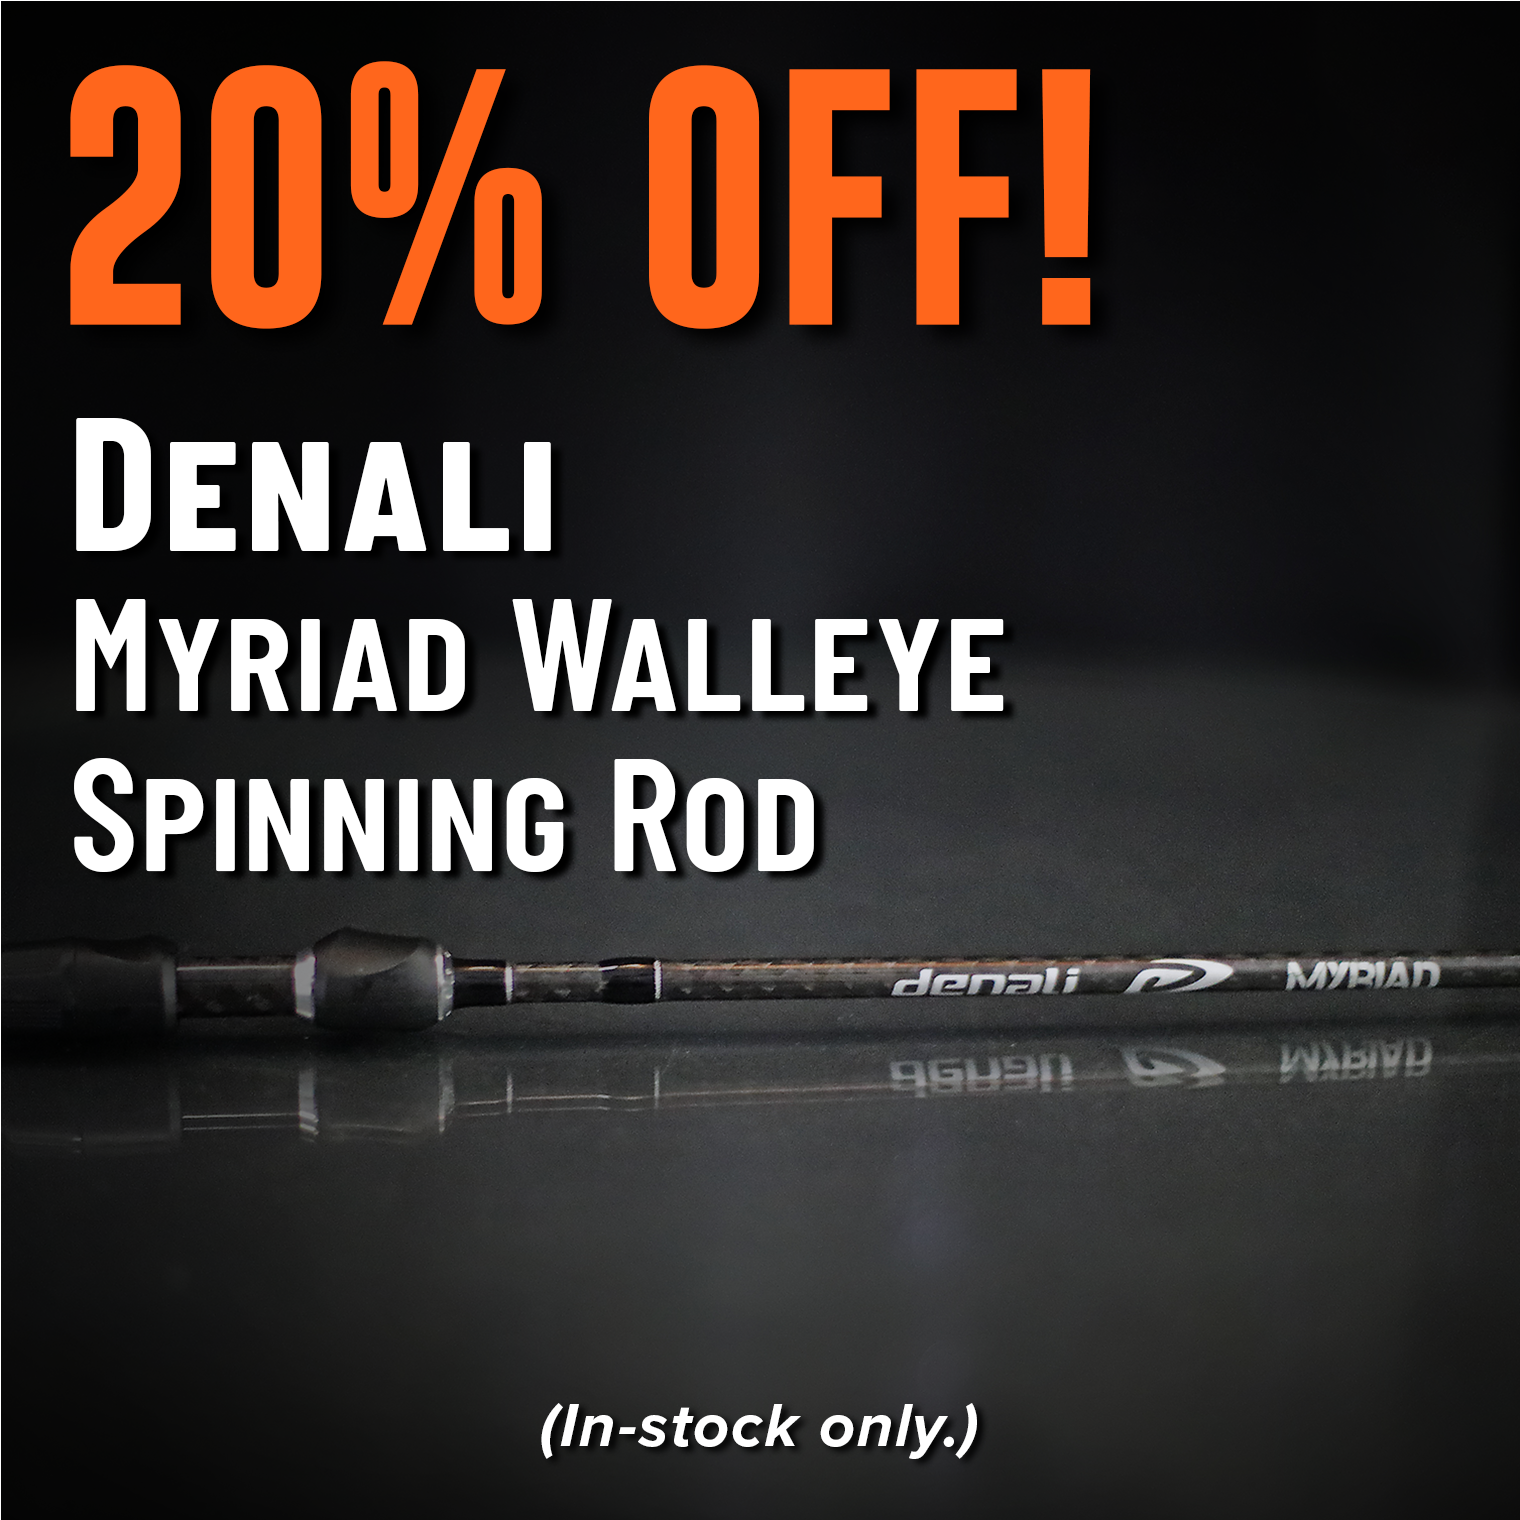 20% Off! Denali Myriad Walleye Spinning Rod